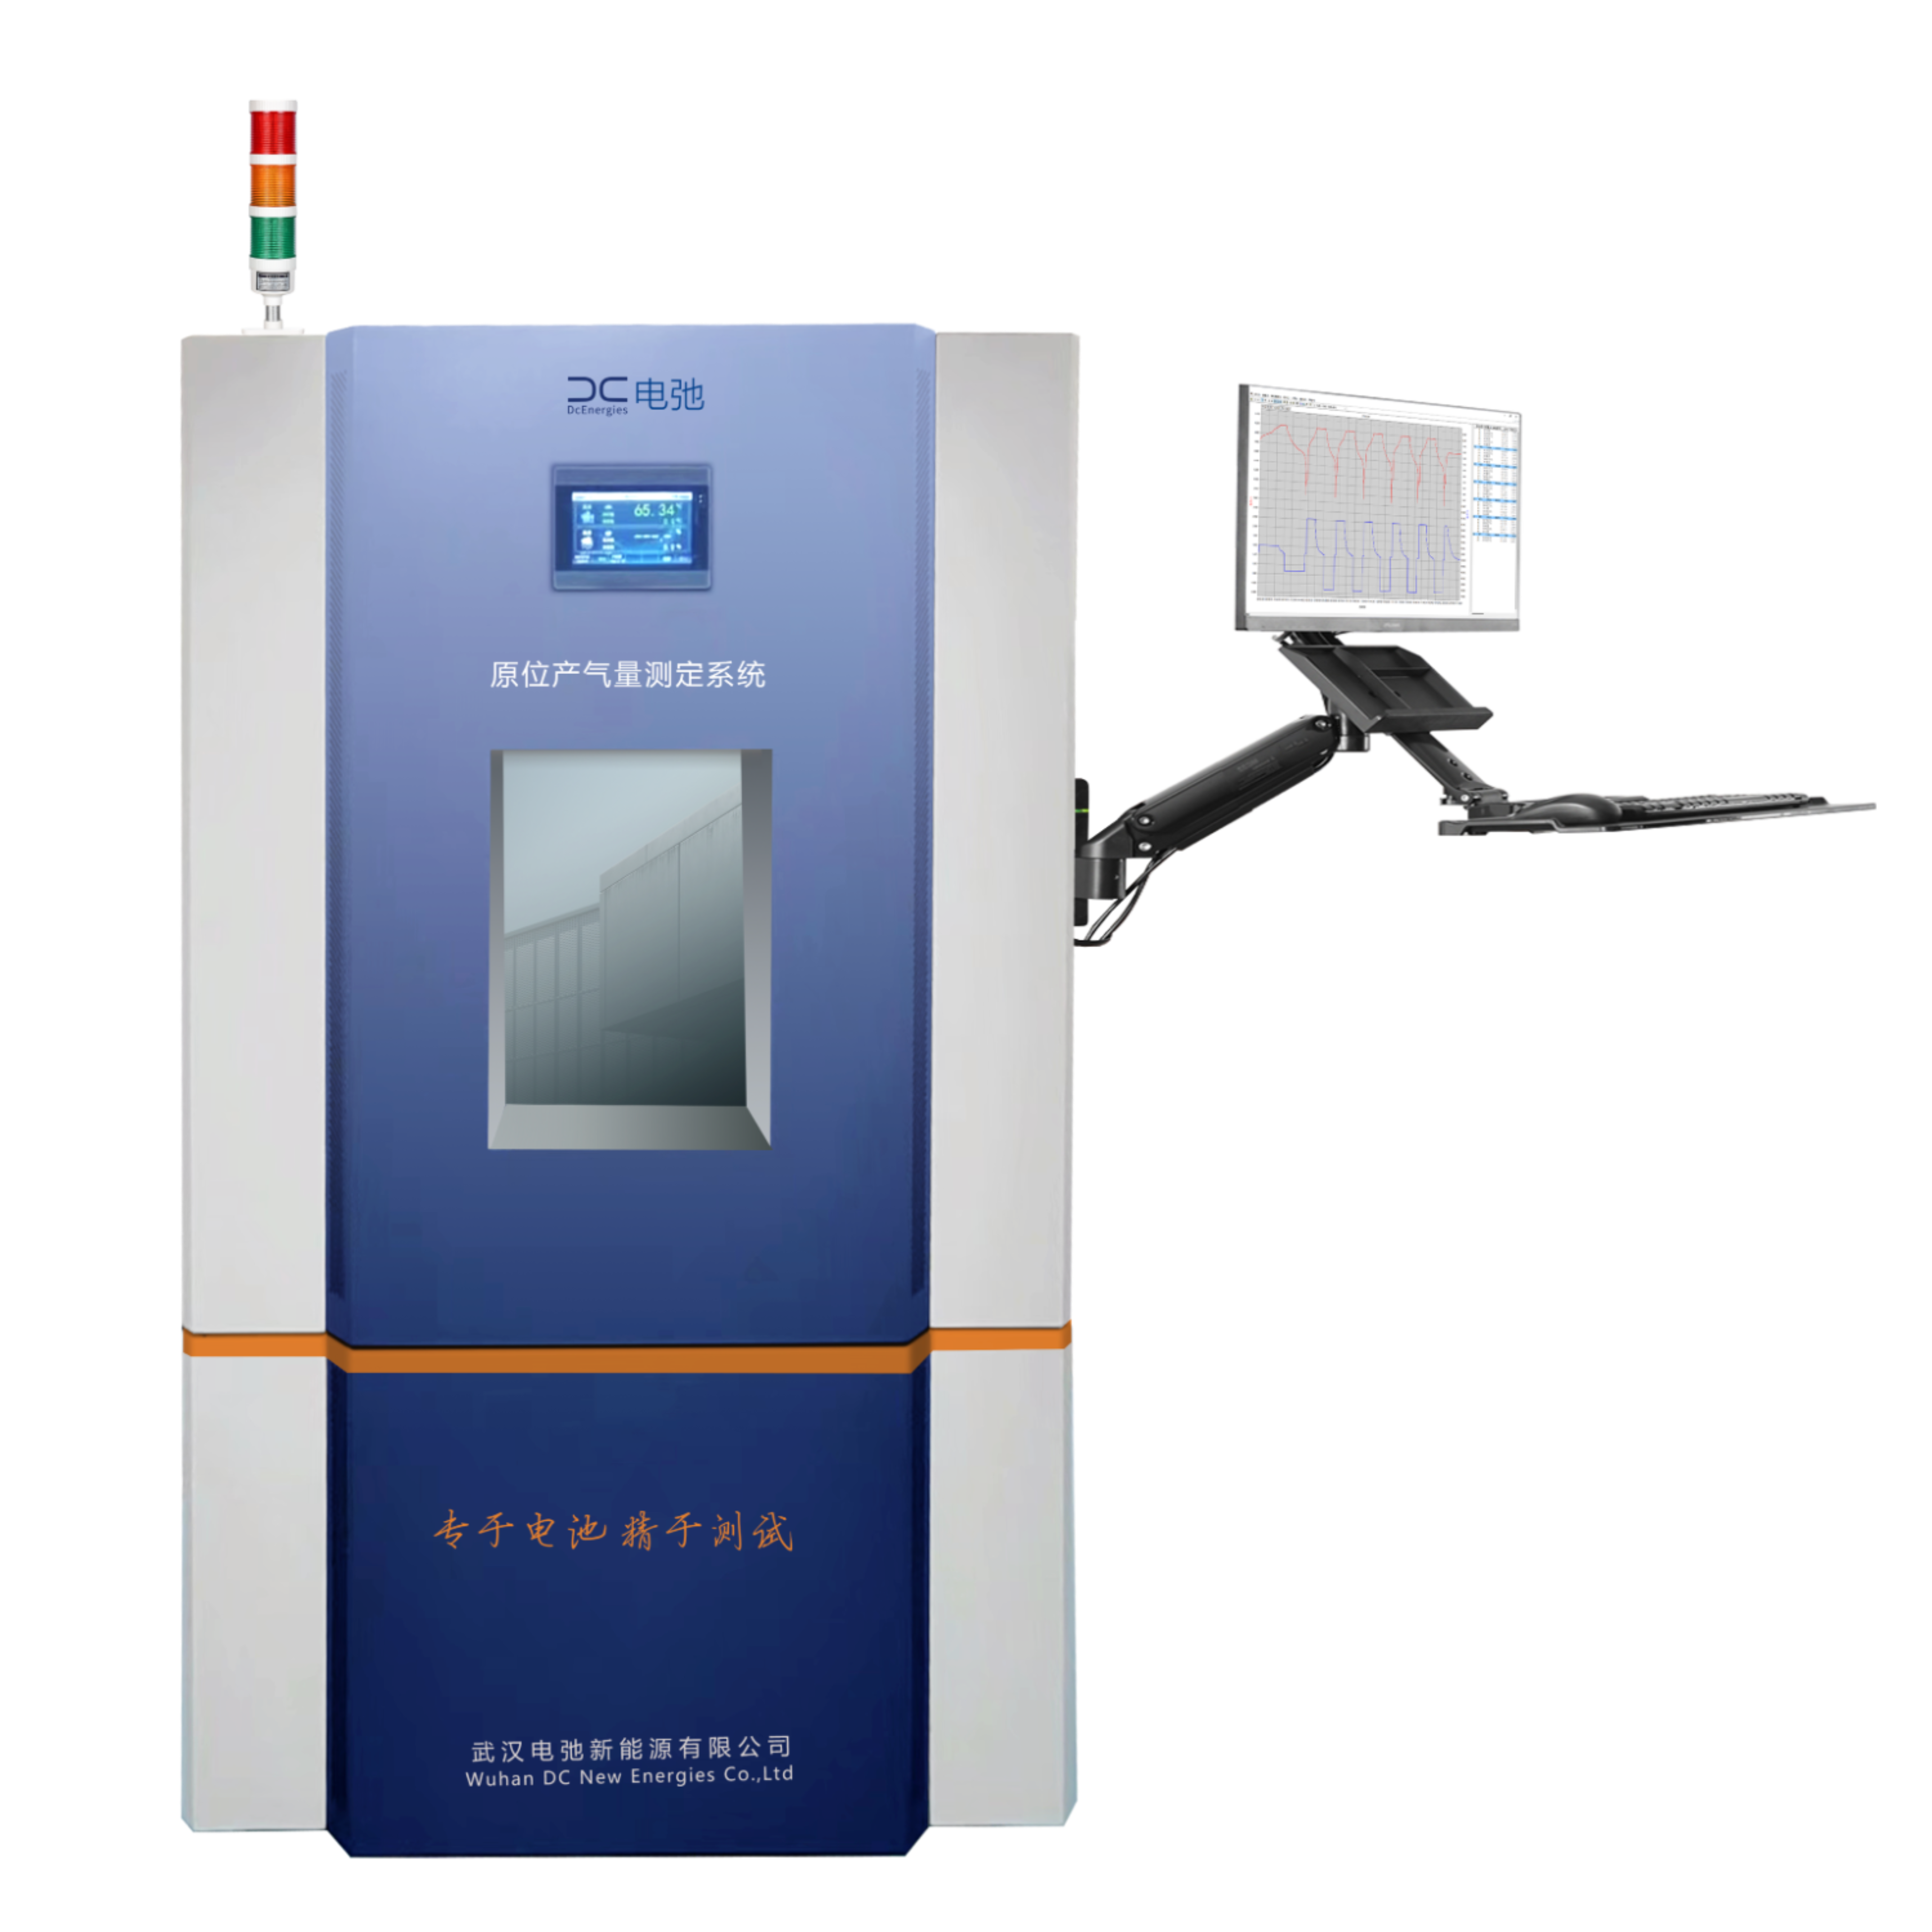 锂电池测试系统,电弛新能源GPT-1000S原位产气量测试系统,电池原位产气,锂电分析仪器